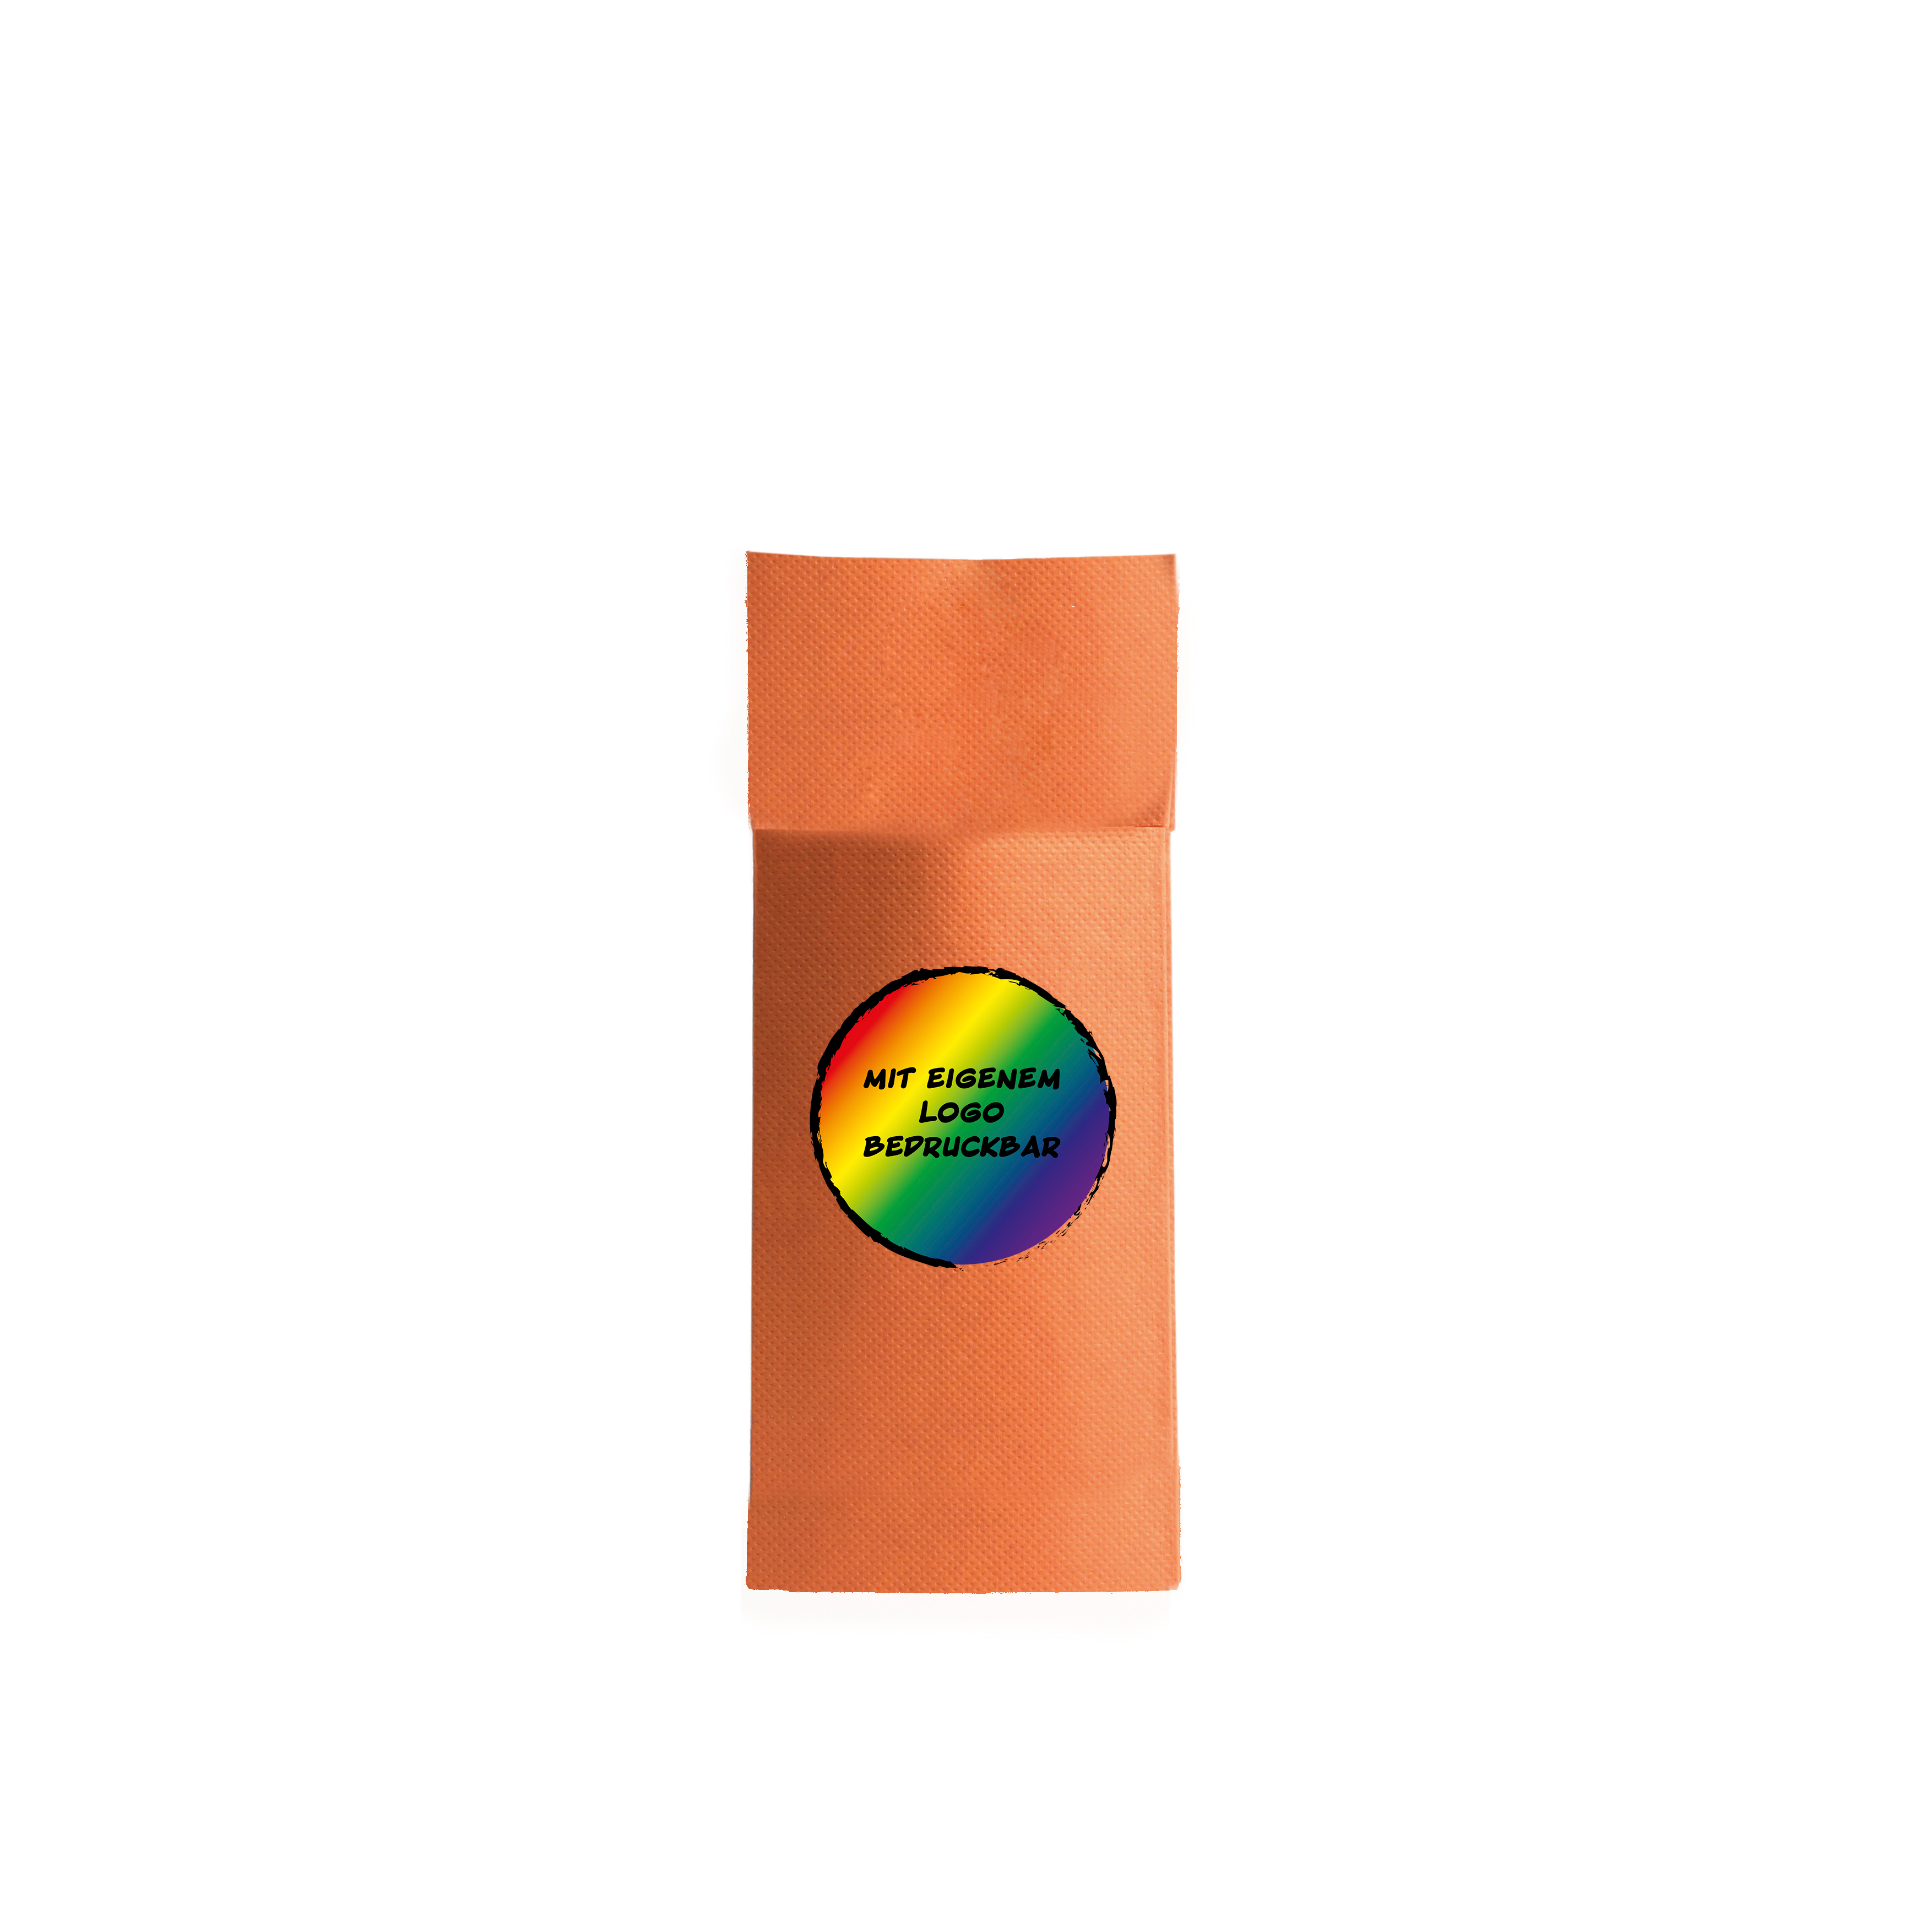 Bestecktaschen "Soft Napkin", 32 x 38 cm, versch. Farben, 50 Stk/Pkg, individuelle Gestaltung